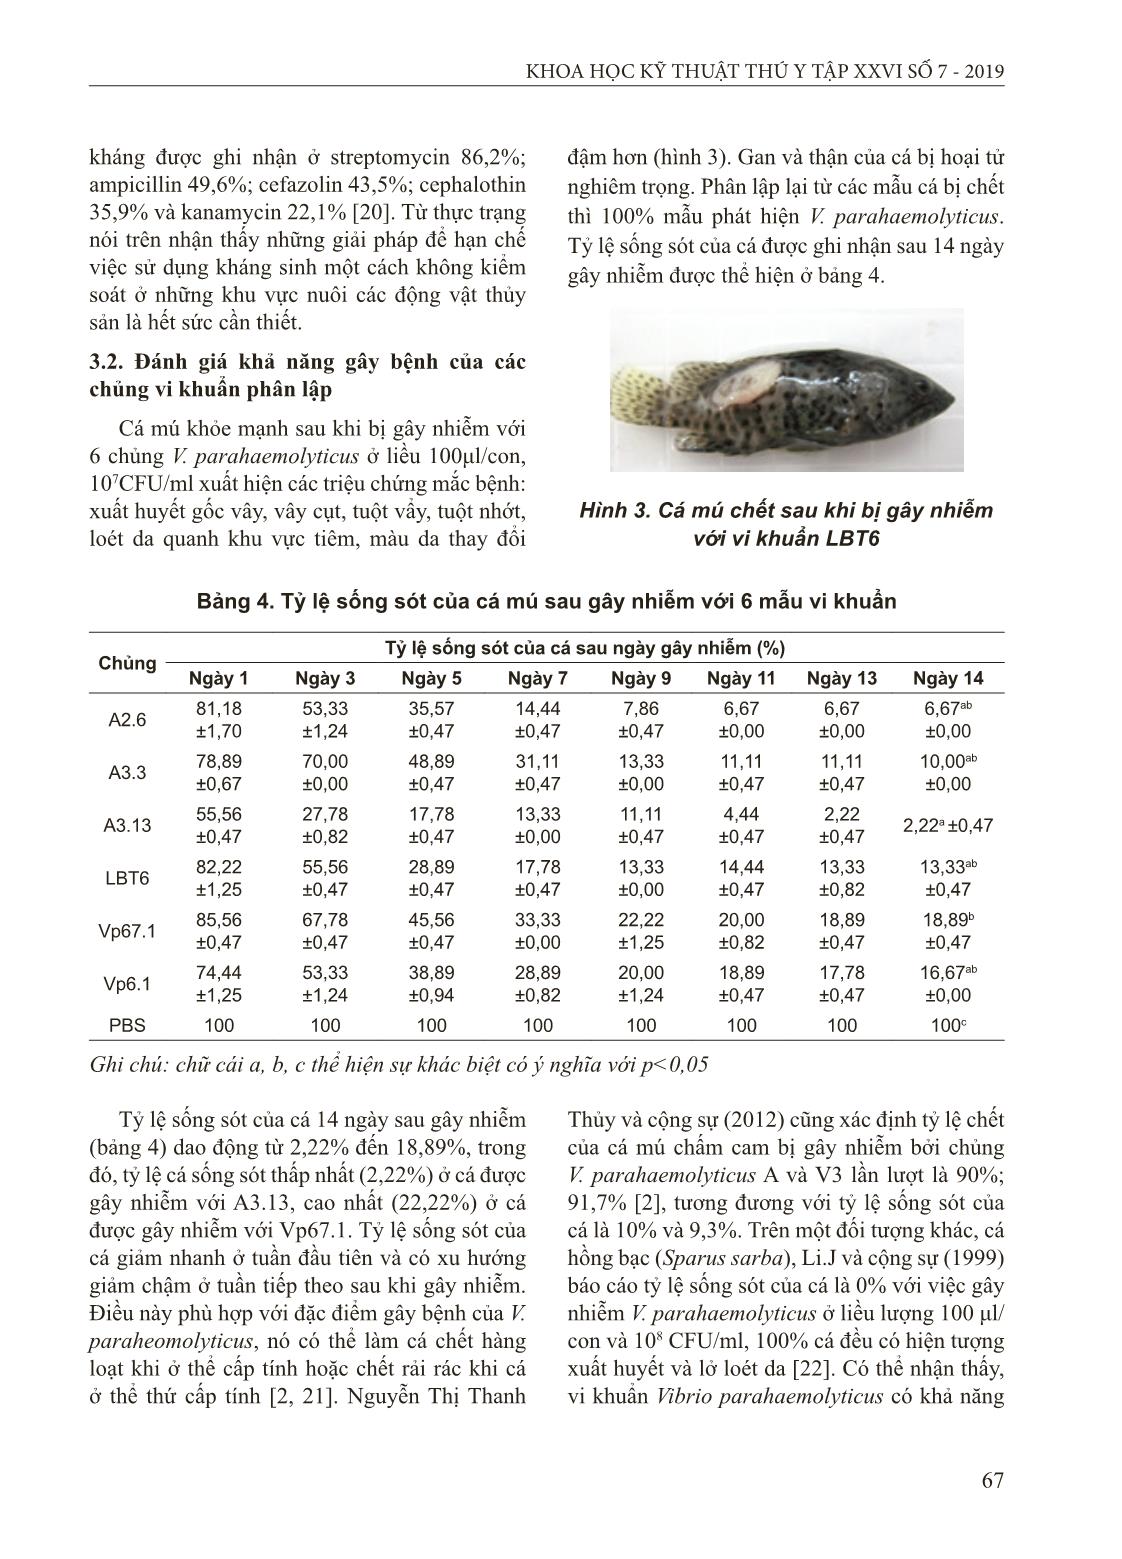 Đặc điểm sinh hóa và di truyền của chủng Vibrio parahaemolyticus gây bệnh hoại tử gan thận cho cá mú nuôi tại Cát Bà, Hải Phòng trang 6